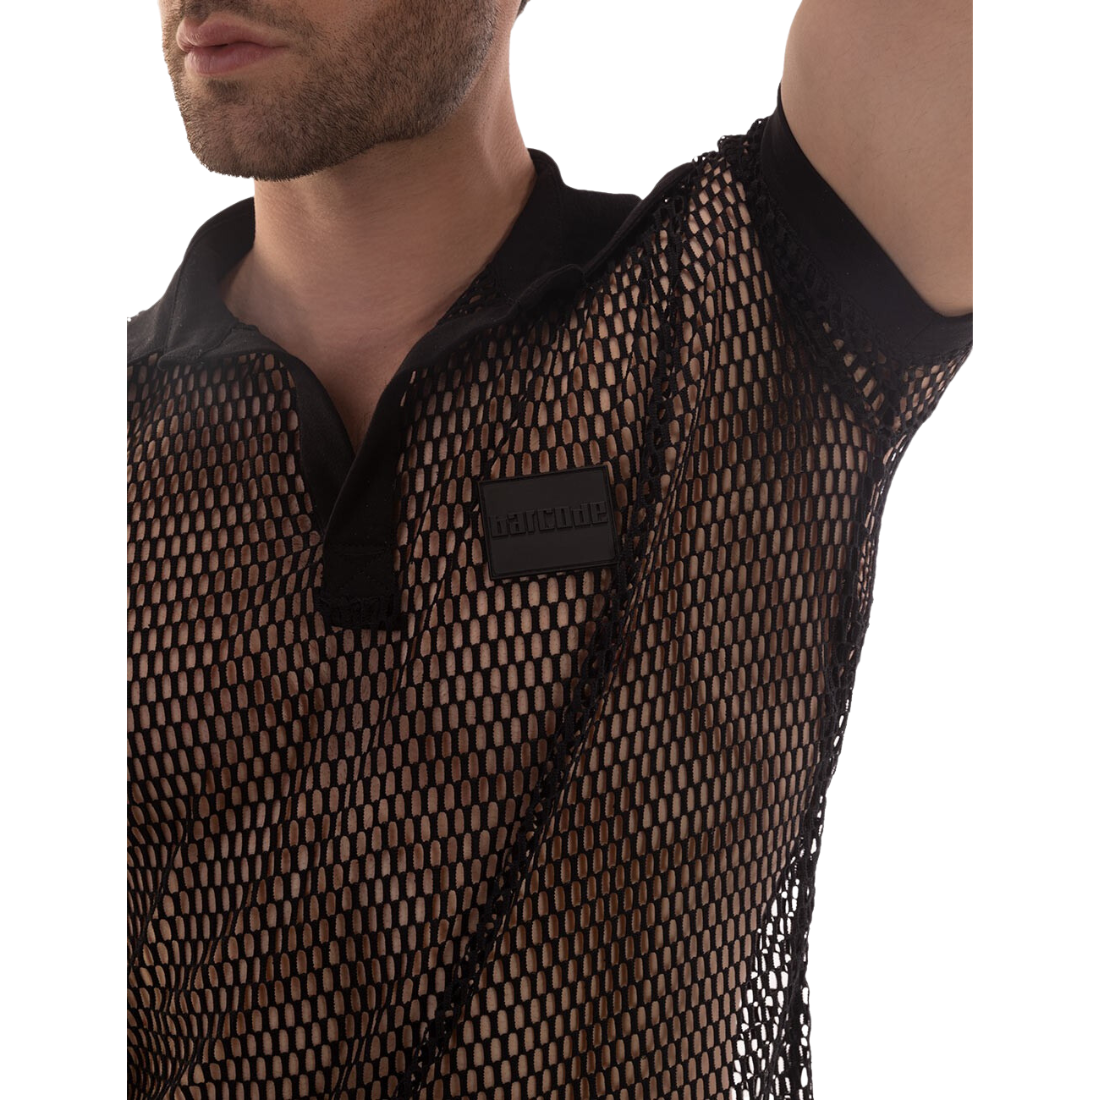 Zwarte, stijlvolle mesh polo, ontworpen door het Duitse modemerk Barcode Berlin en te koop bij Flavourez.